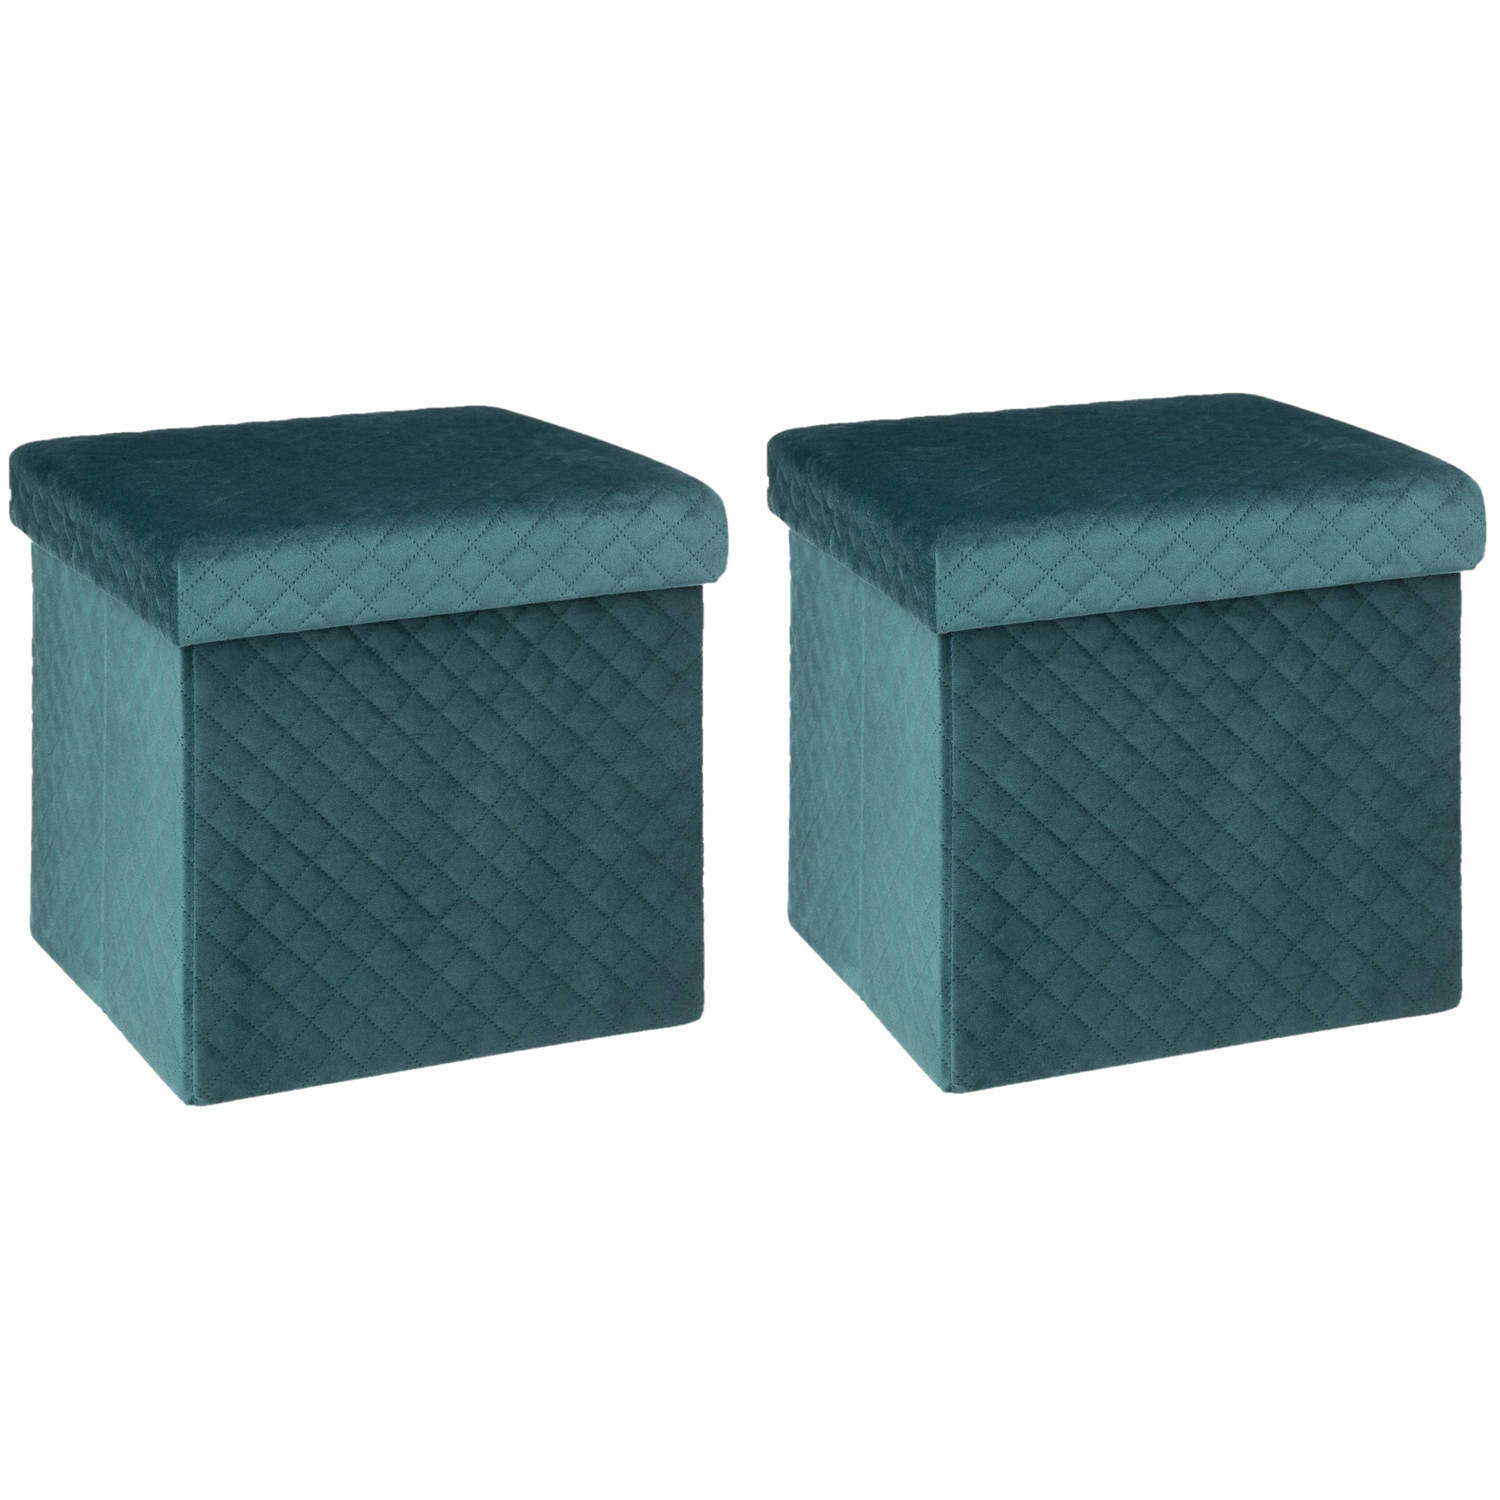 Poef/hocker - 2x - opbergbox - fluweel blauw - kunststof/mdf - 31 x 31 x cm - opvouwbaar - Krukjes | Blokker